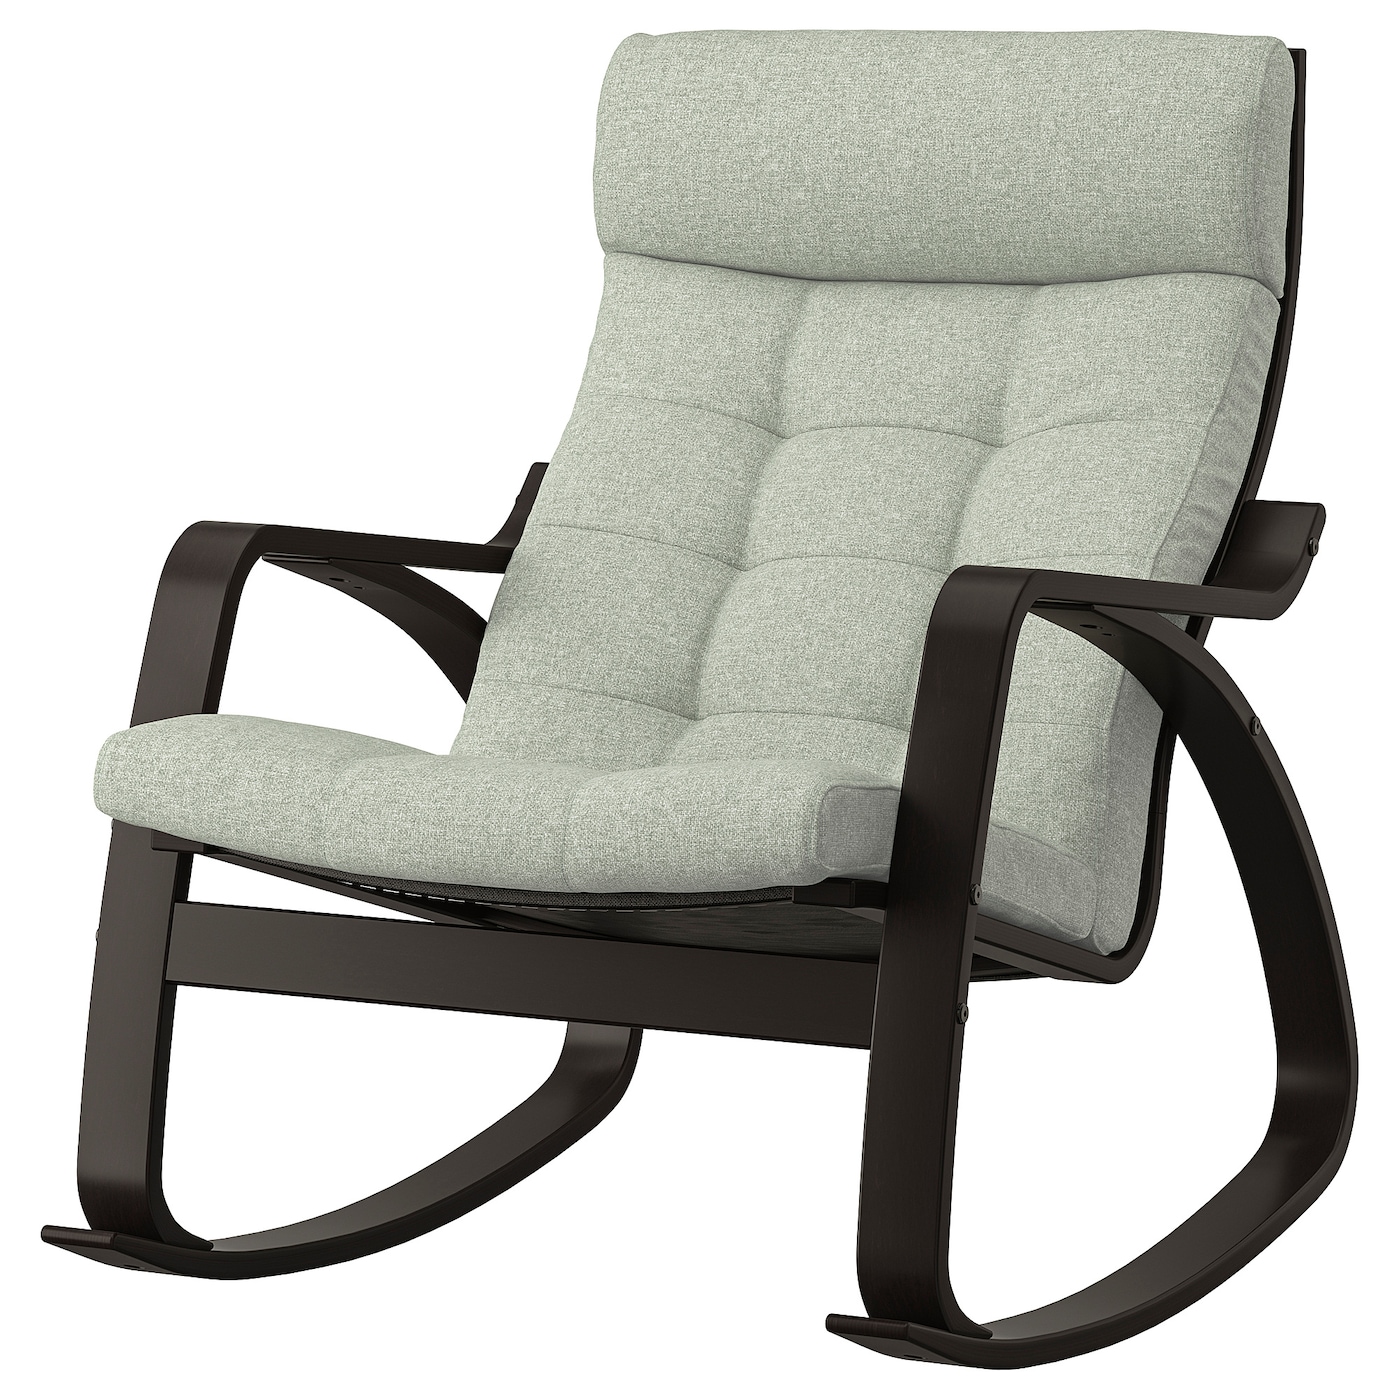 ПОЭНГ Кресло-качалка, черно-коричневый/Гуннаред светло-зеленый POÄNG IKEA детское электрическое кресло качалка удобное кресло качалка бесплатная установка